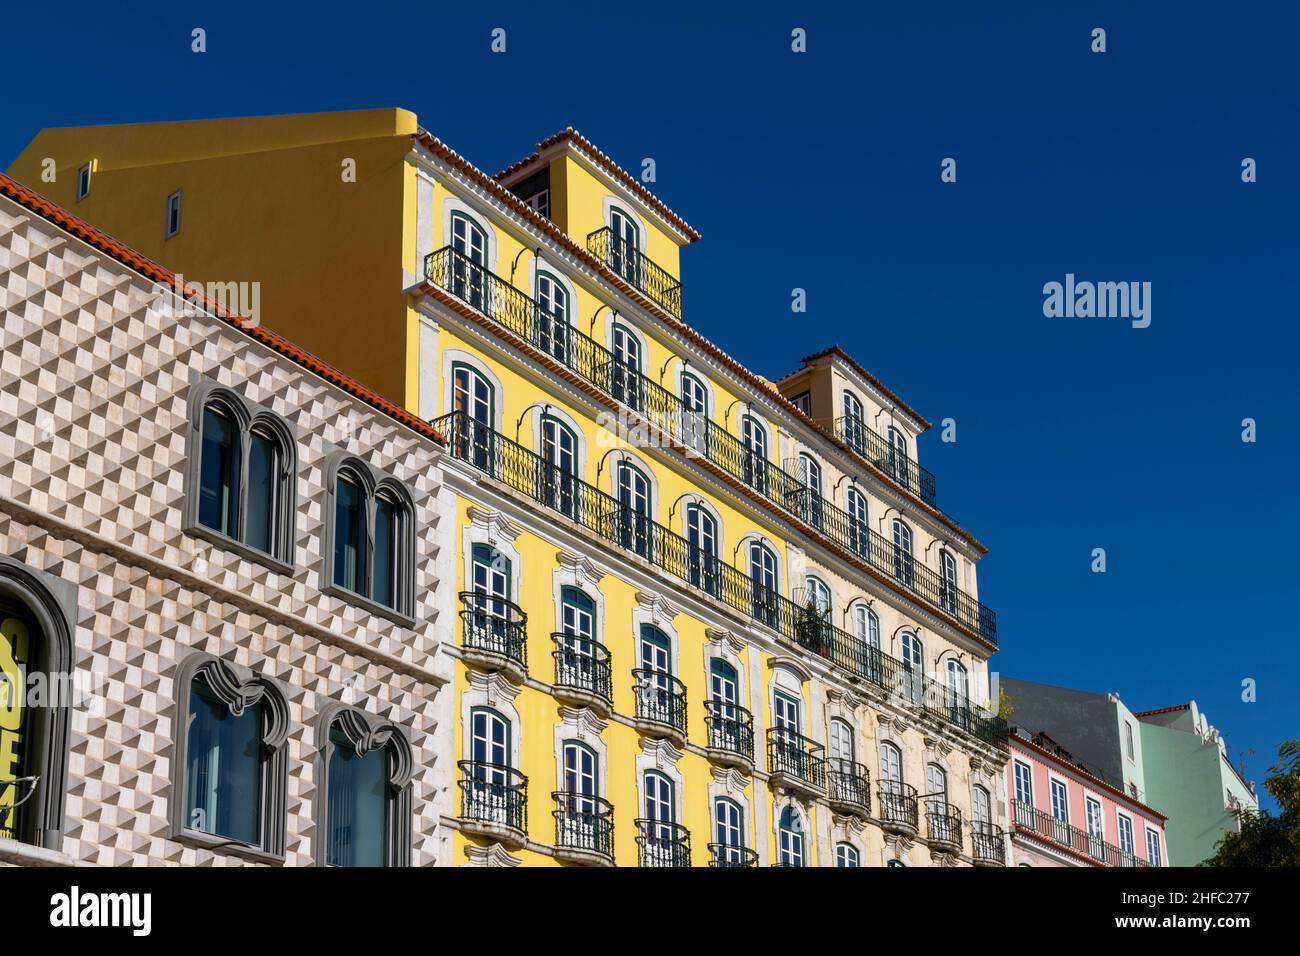 Typische, traditionelle, helle, farbenfrohe und lebendige Gebäude in Lissabon, Portugal. Picture Perfect Postkarte. Besuchen Sie Lisboa Concept. Reisehintergrund Stockfoto